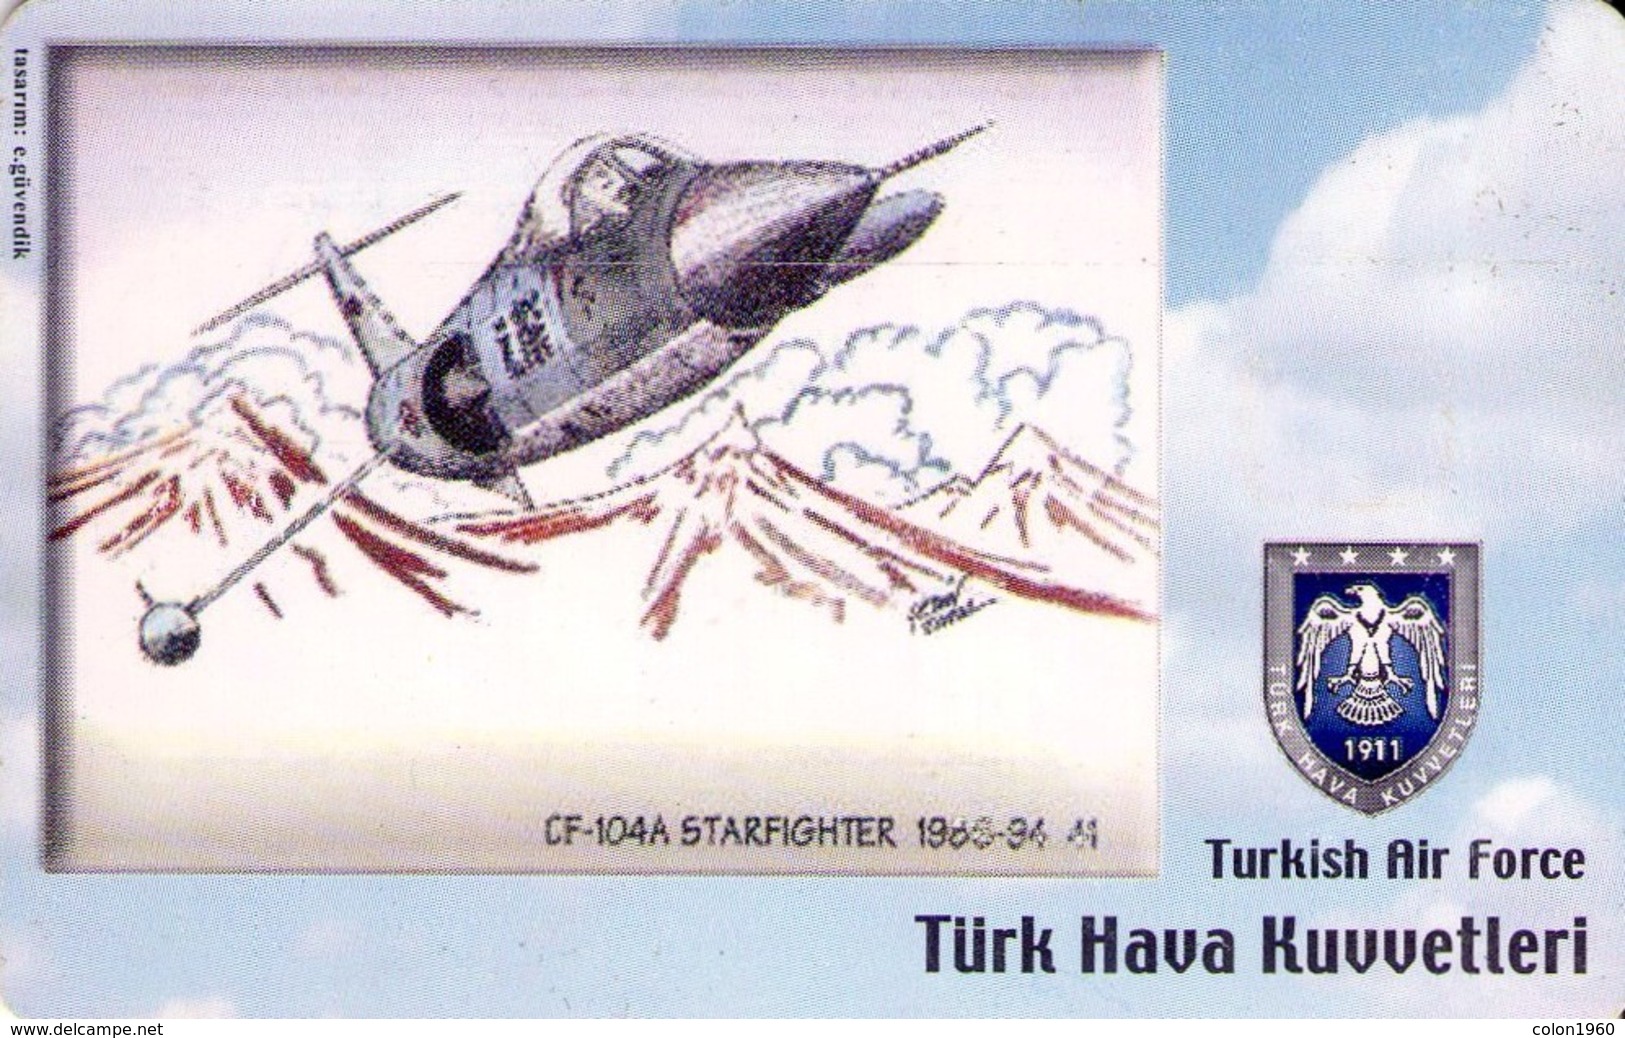 TARJETA TELEFONICA DE TURQUIA, AVIONES. (CHIP) TURKISH AIR FORCE, CF-104A STARFIGHTER 1986-94, TR-TT-C-0191A (124) - Avions